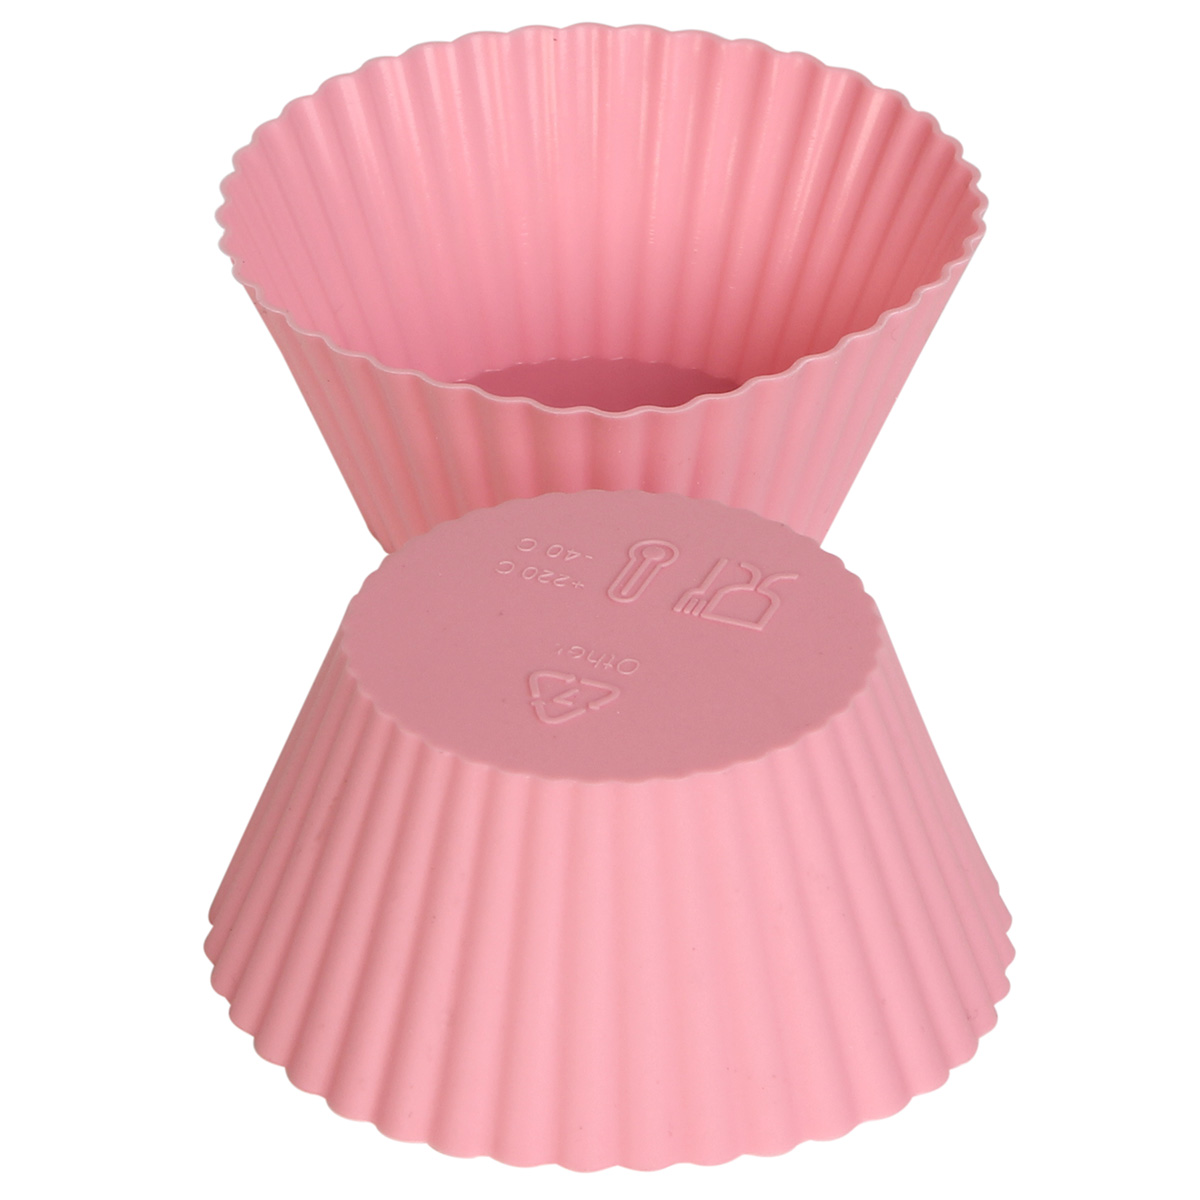 Φορμάκια σιλικόνης Muffin – Cupcake τεμ. 6 Φ7Χ3 εκ. ροζ - KESKOR 65047-6